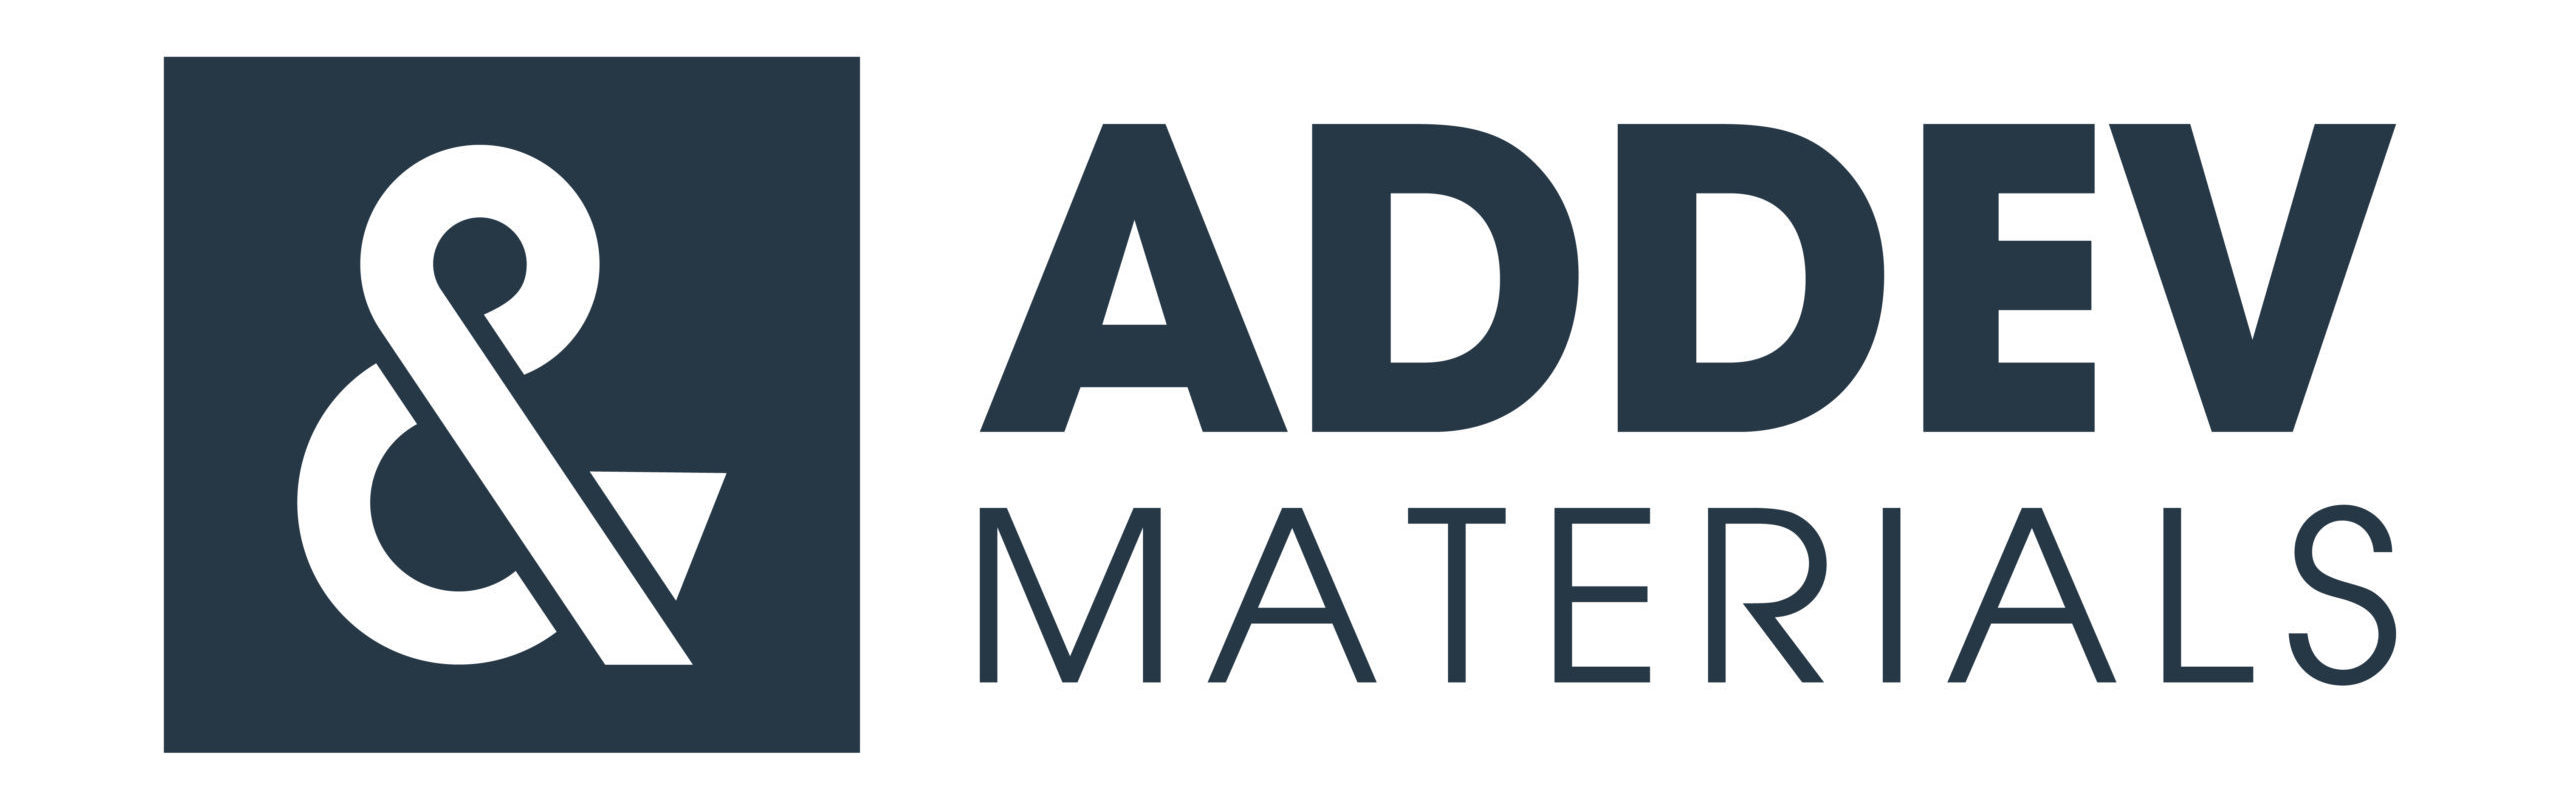 ADDEV Materials - Firma